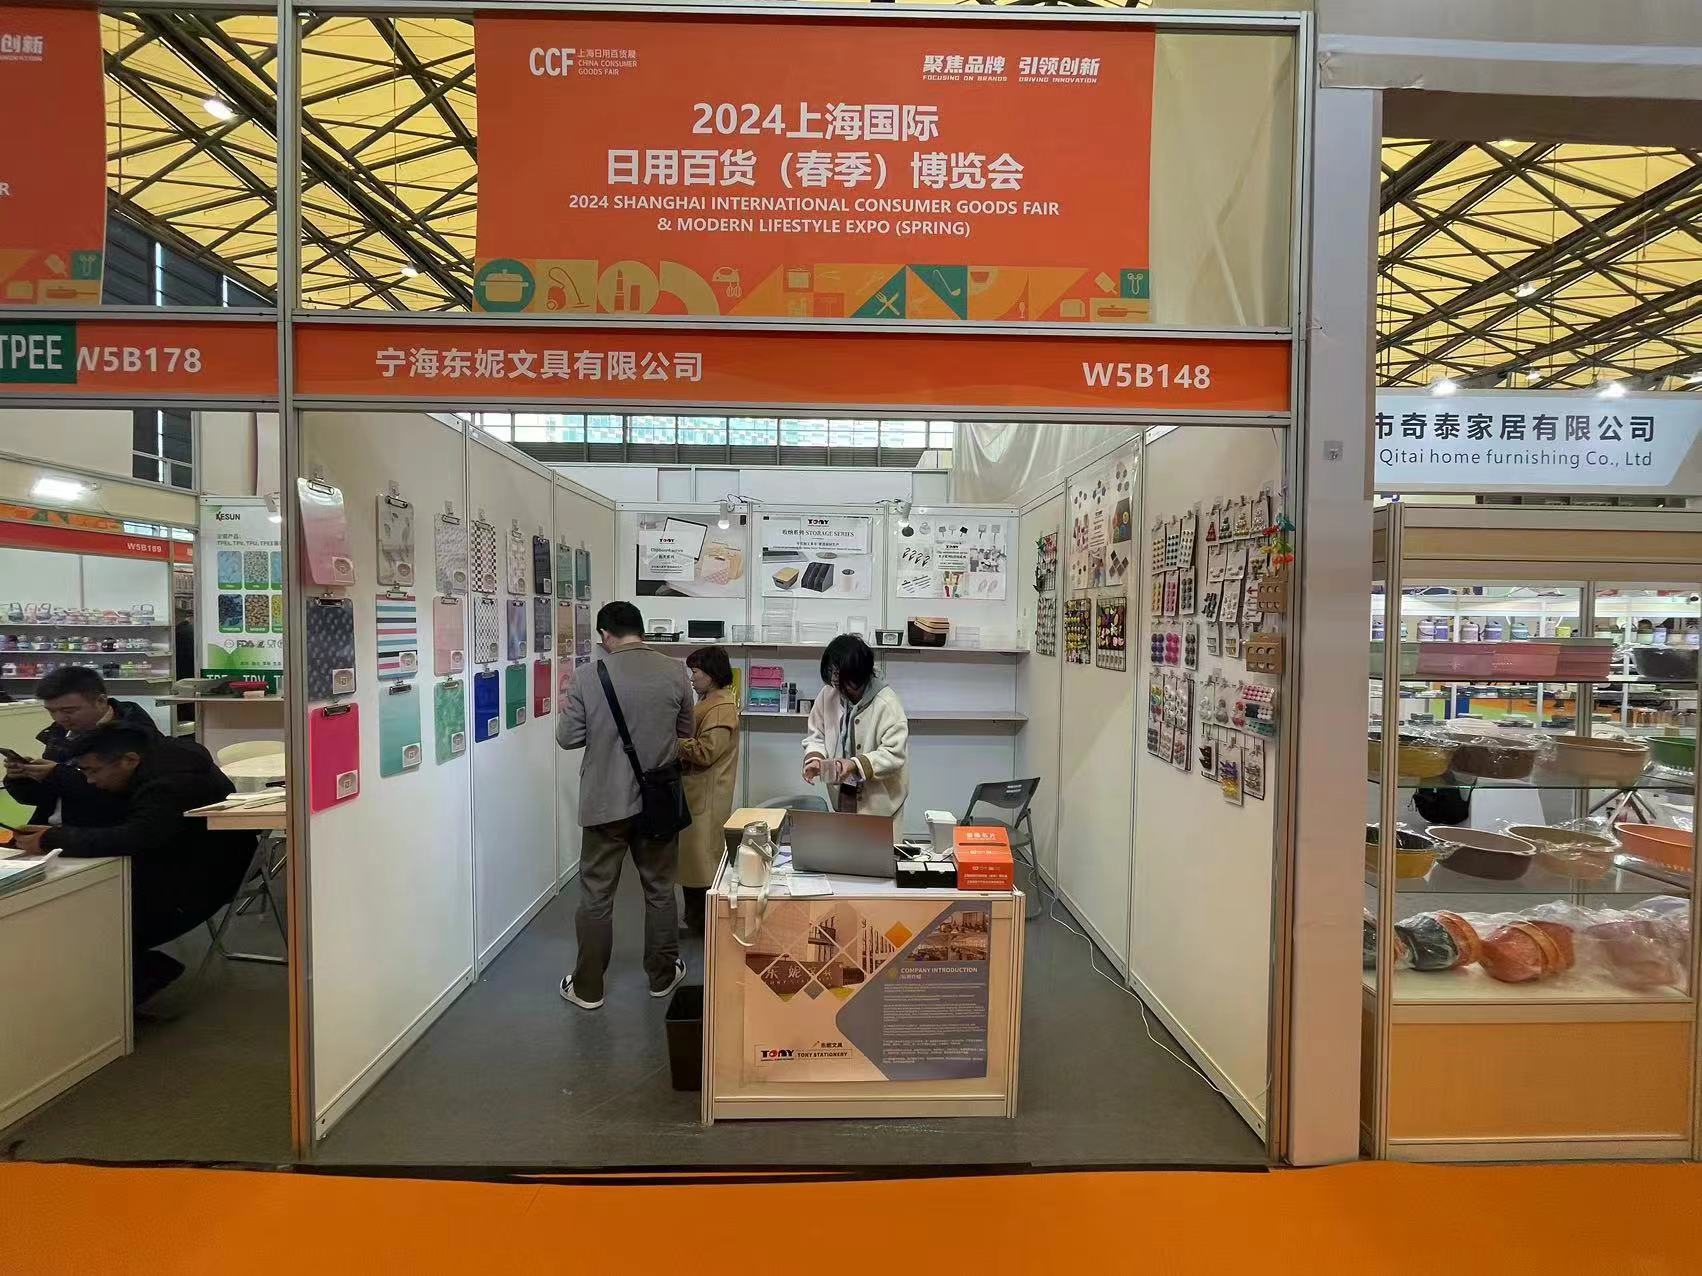 นิทรรศการเครื่องเขียนของ Tony ในงาน Shanghai International Consumer Goods Fair ปี 2024